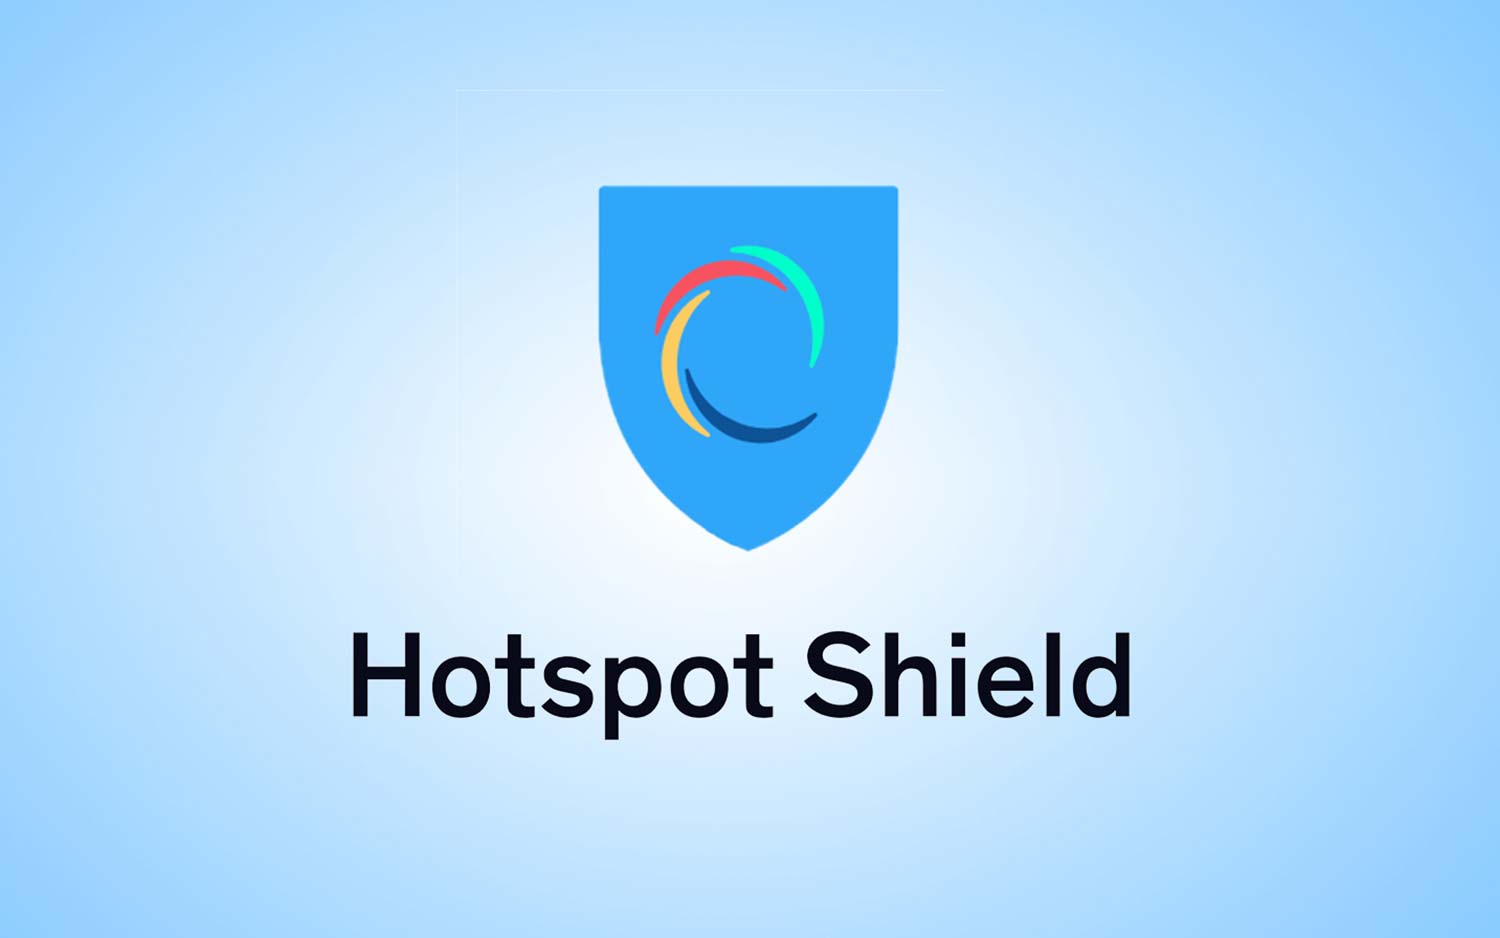 تحميل برنامج هوت سبوت شيلد كامل مجانا Hotspot Shield VPN